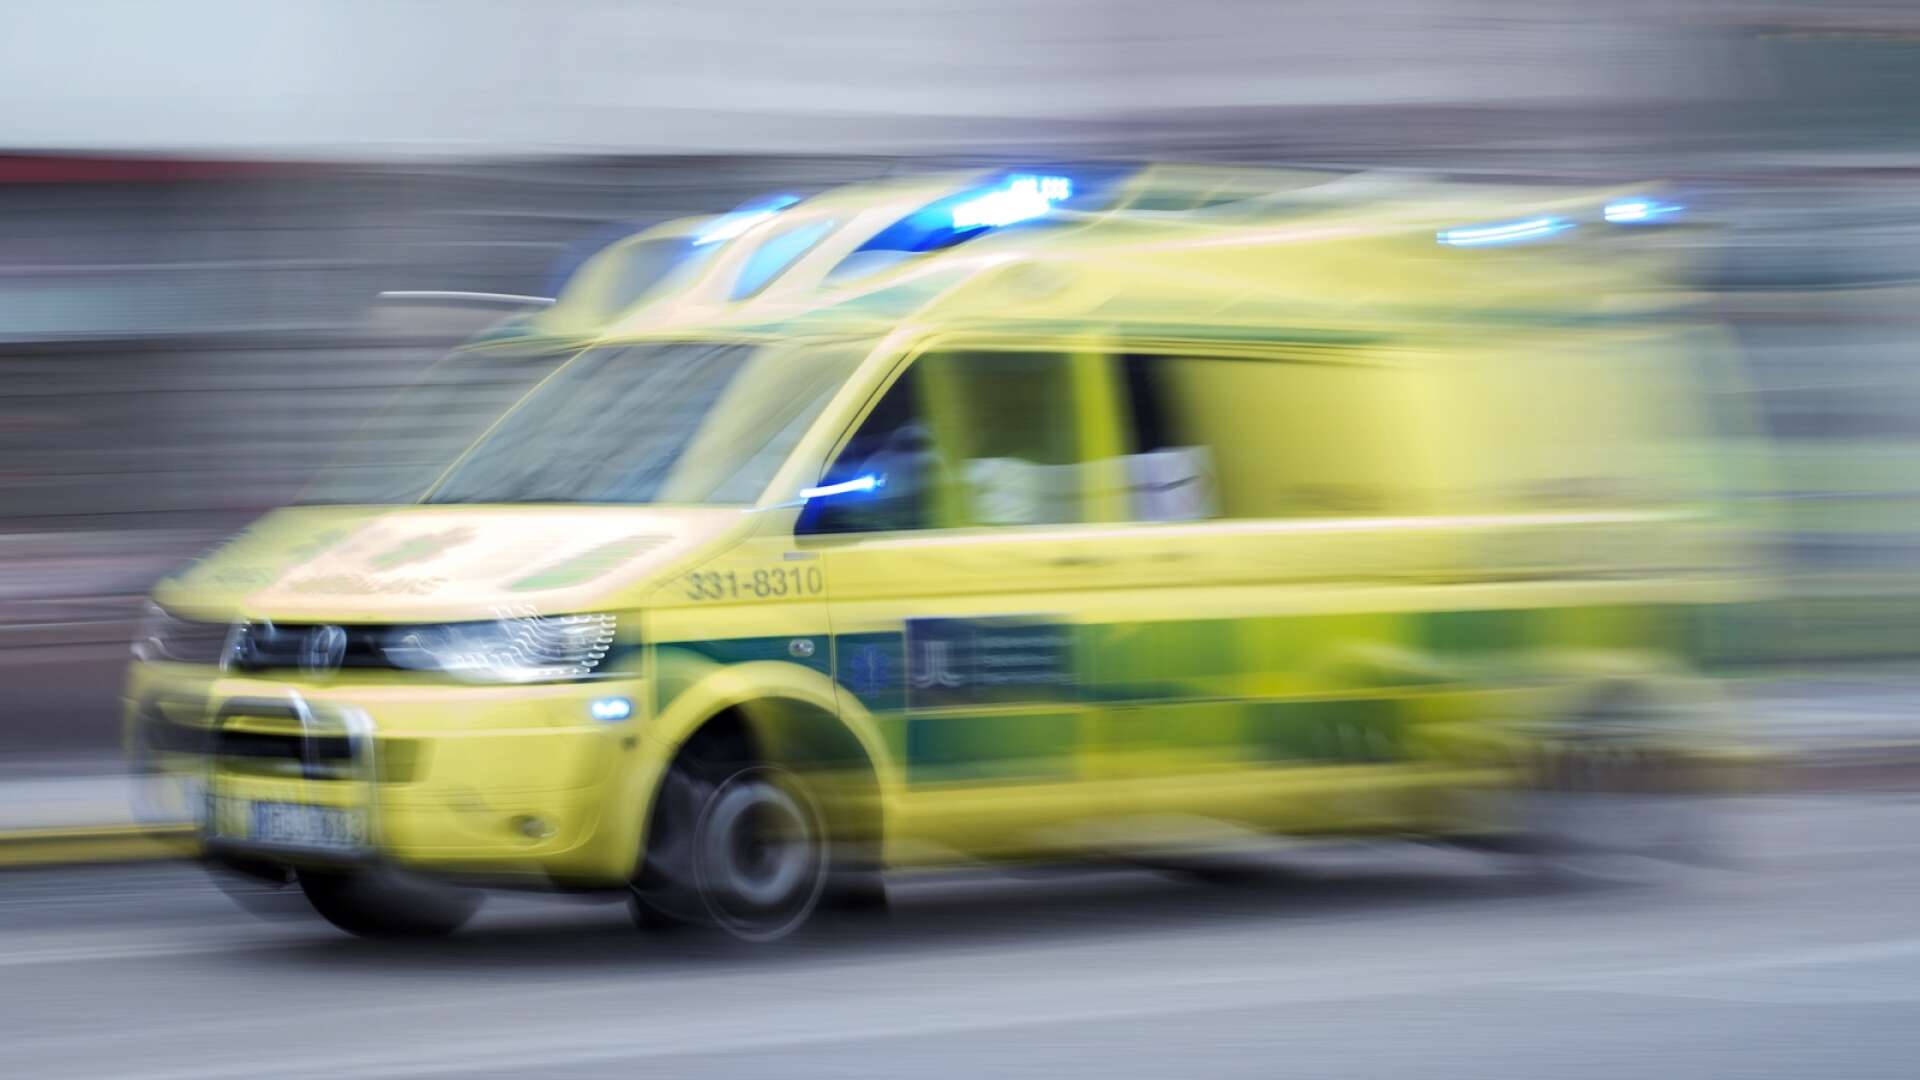 En Skövdebo i 60-årsåldern fördes i ambulans till Skaraborgs sjukhus i augusti 2018 där han avled under mystiska omständigheter och det talades om ett misstänkt giftmord. Nu har en åklagare i Skövde tagit över det uppmärksammade ärendet.